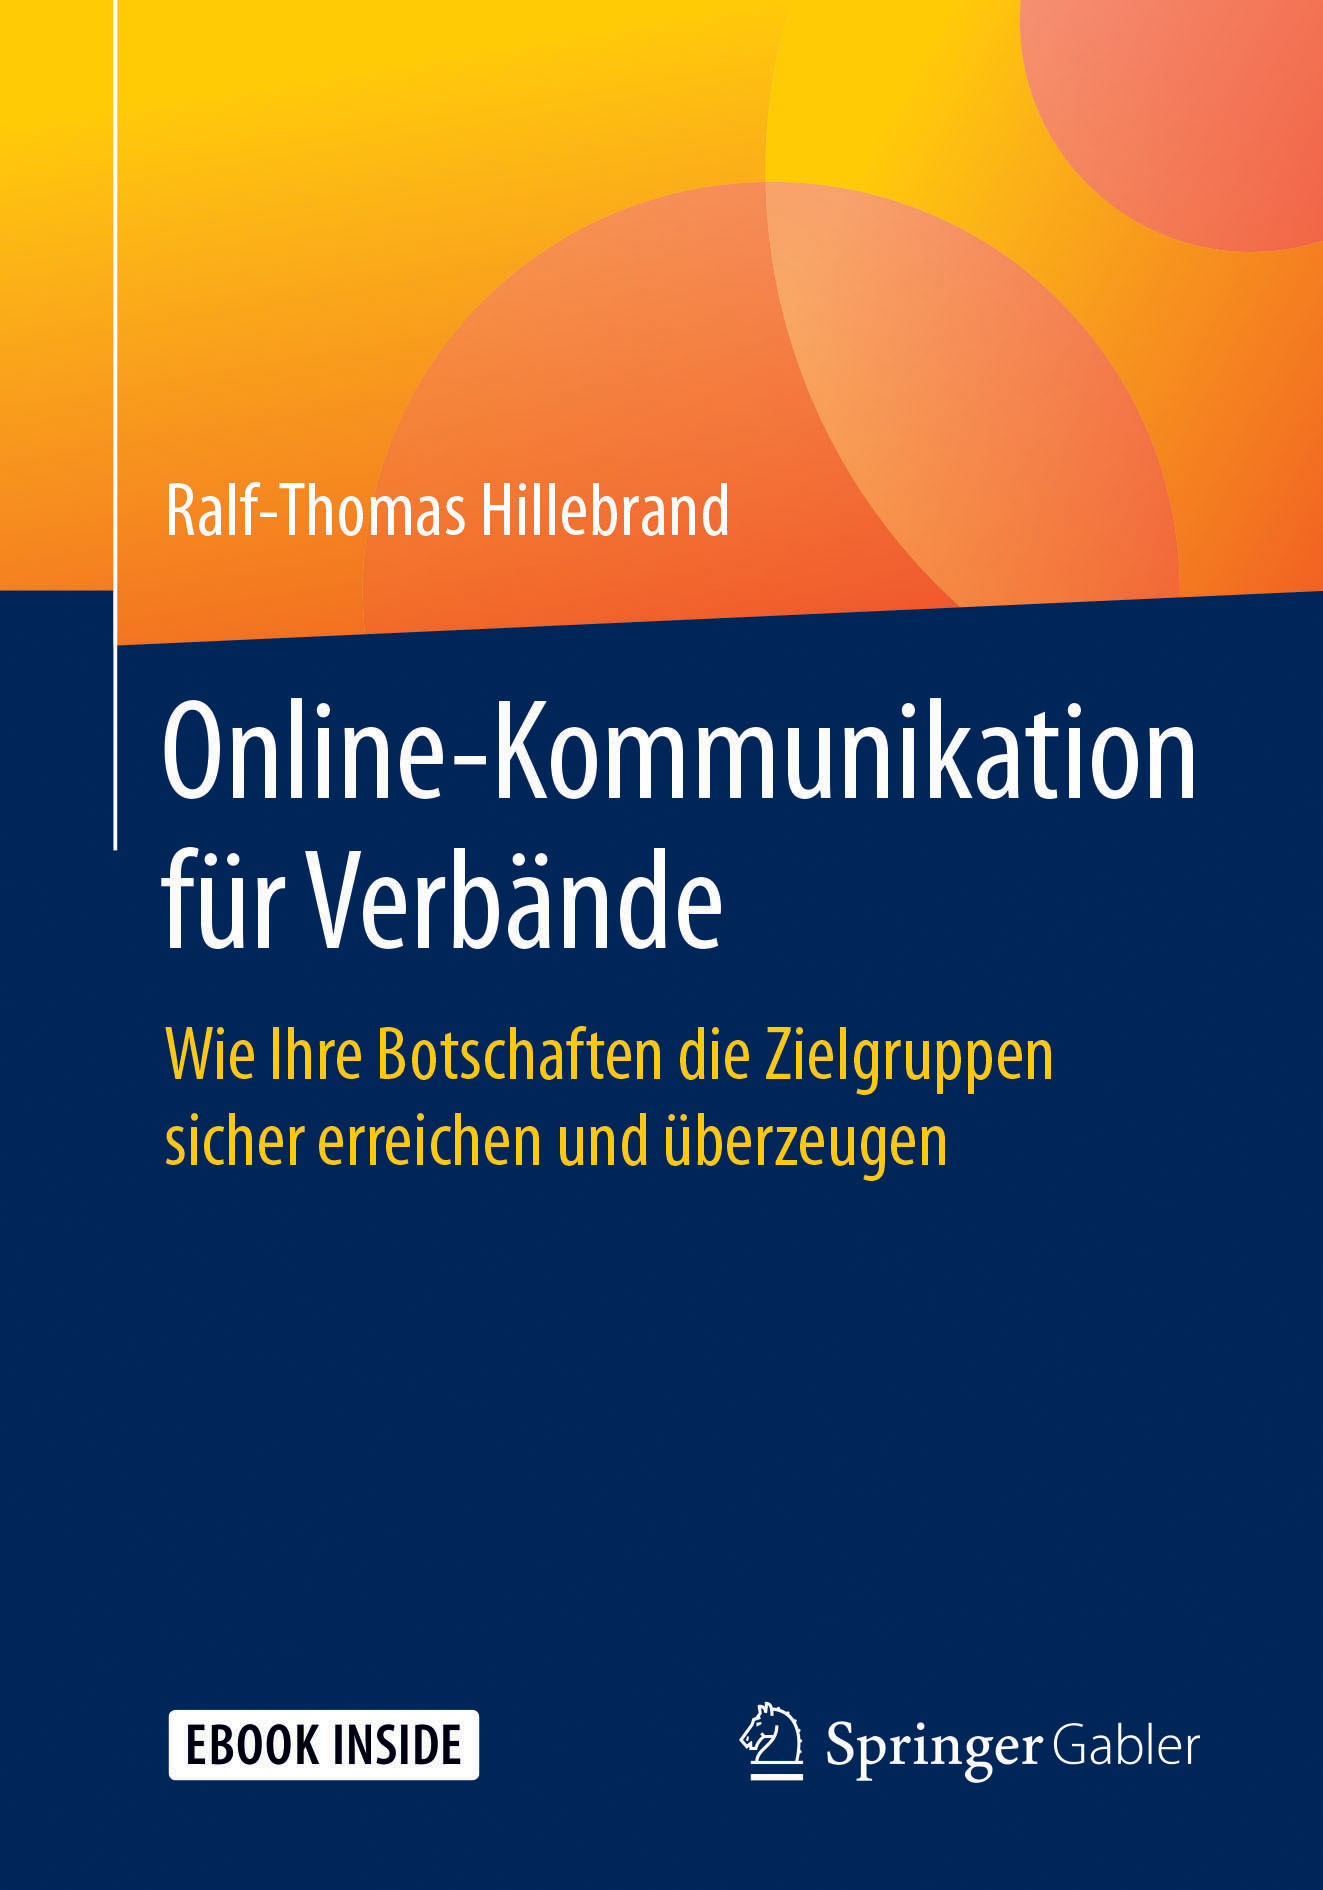 Hillebrand, Ralf-Thomas - Online-Kommunikation für Verbände, ebook